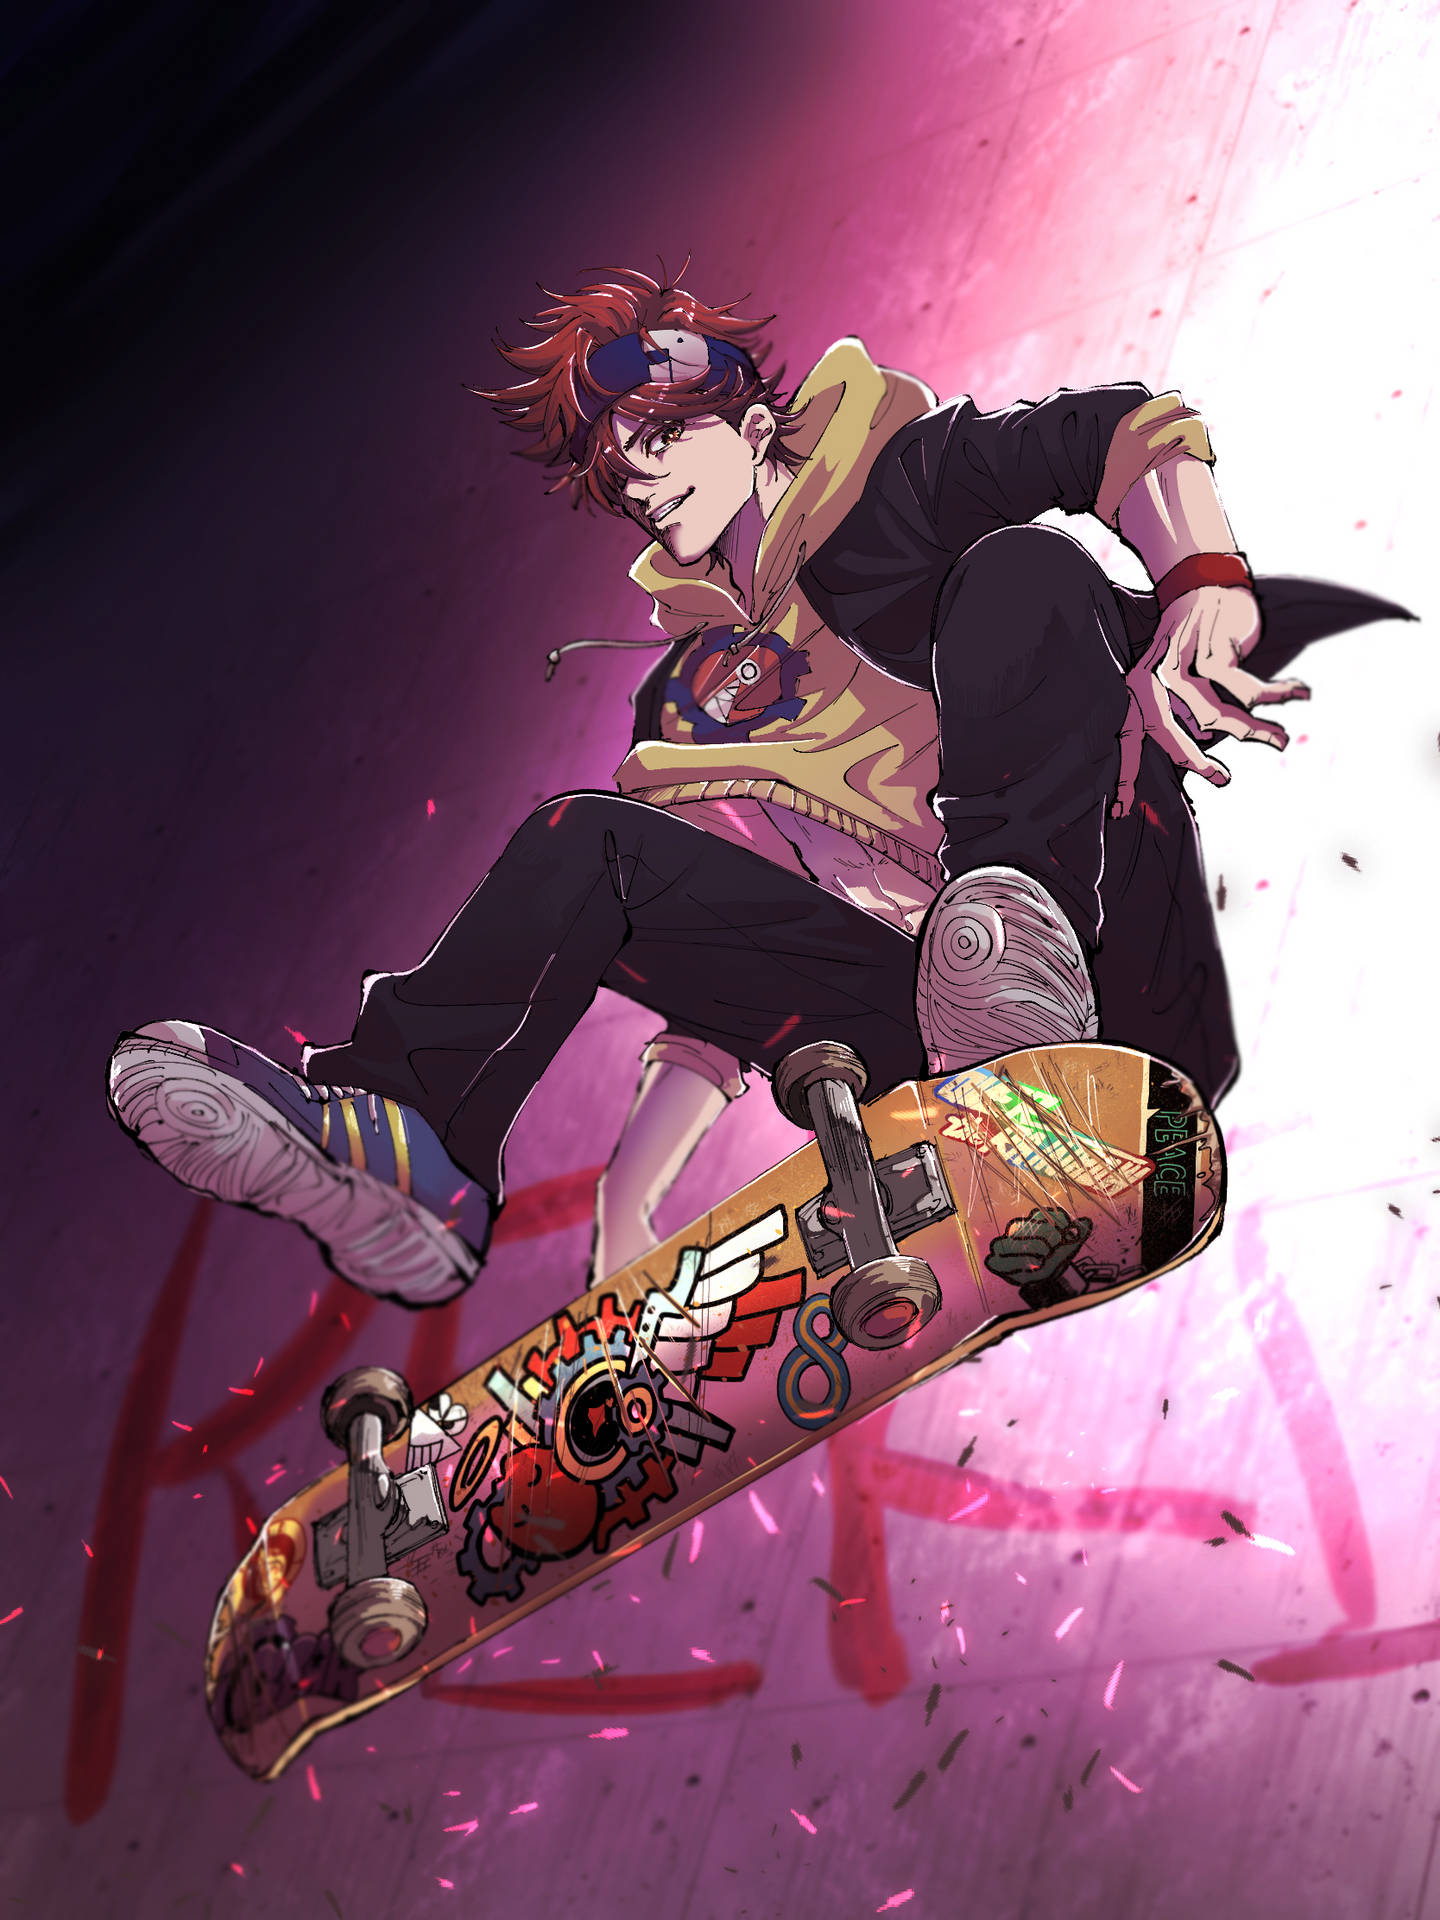 Aesthetic Anime Skater Boy